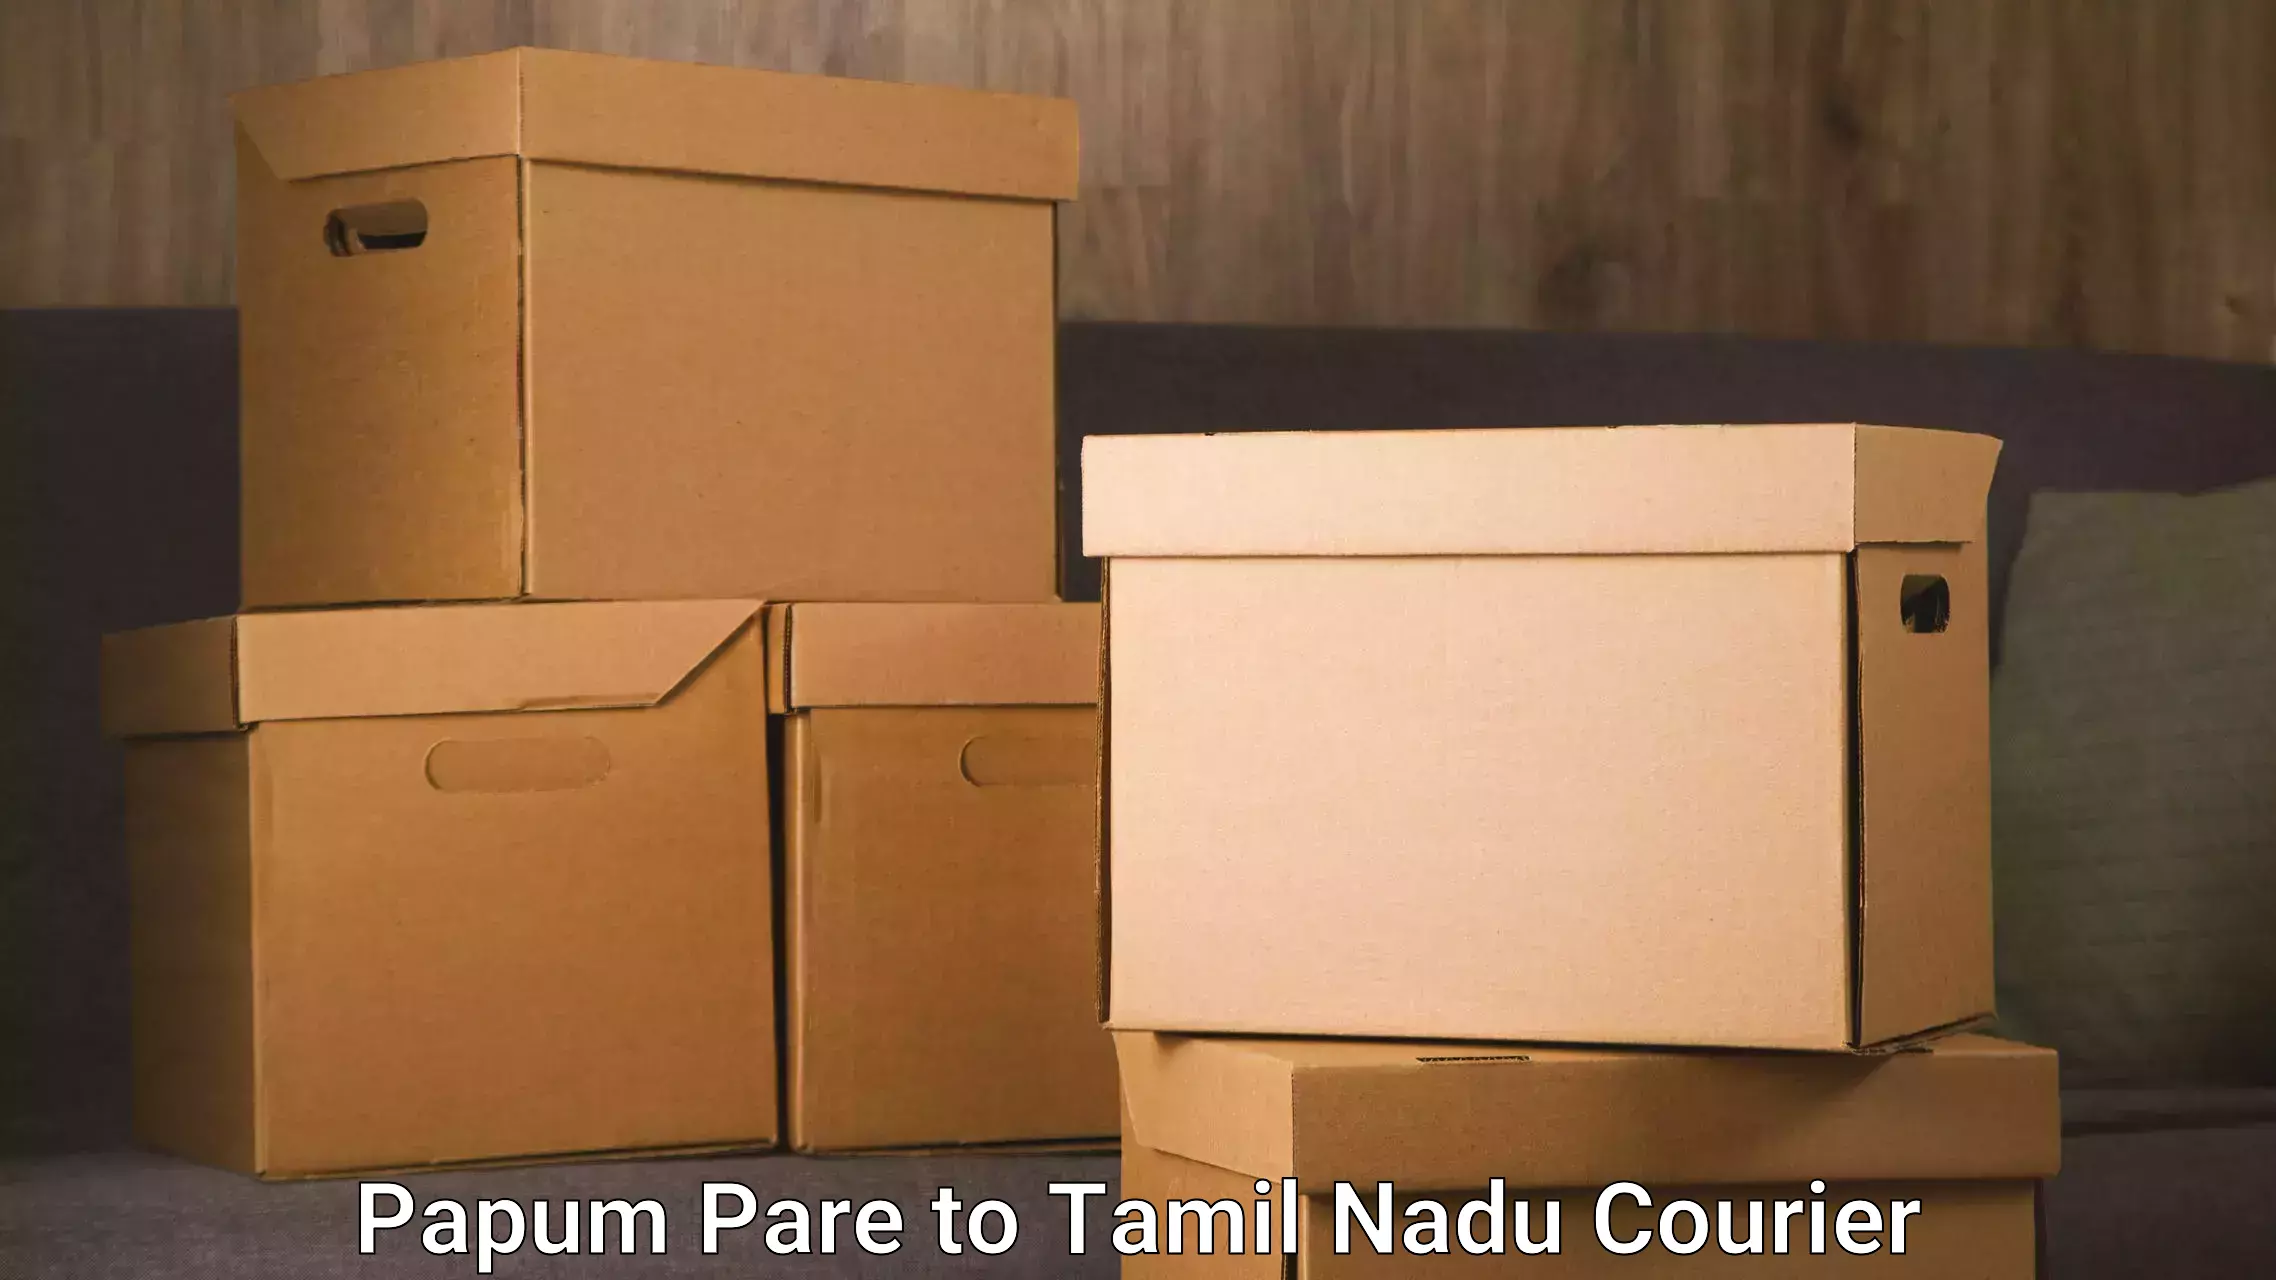 Express logistics service Papum Pare to Tamil Nadu